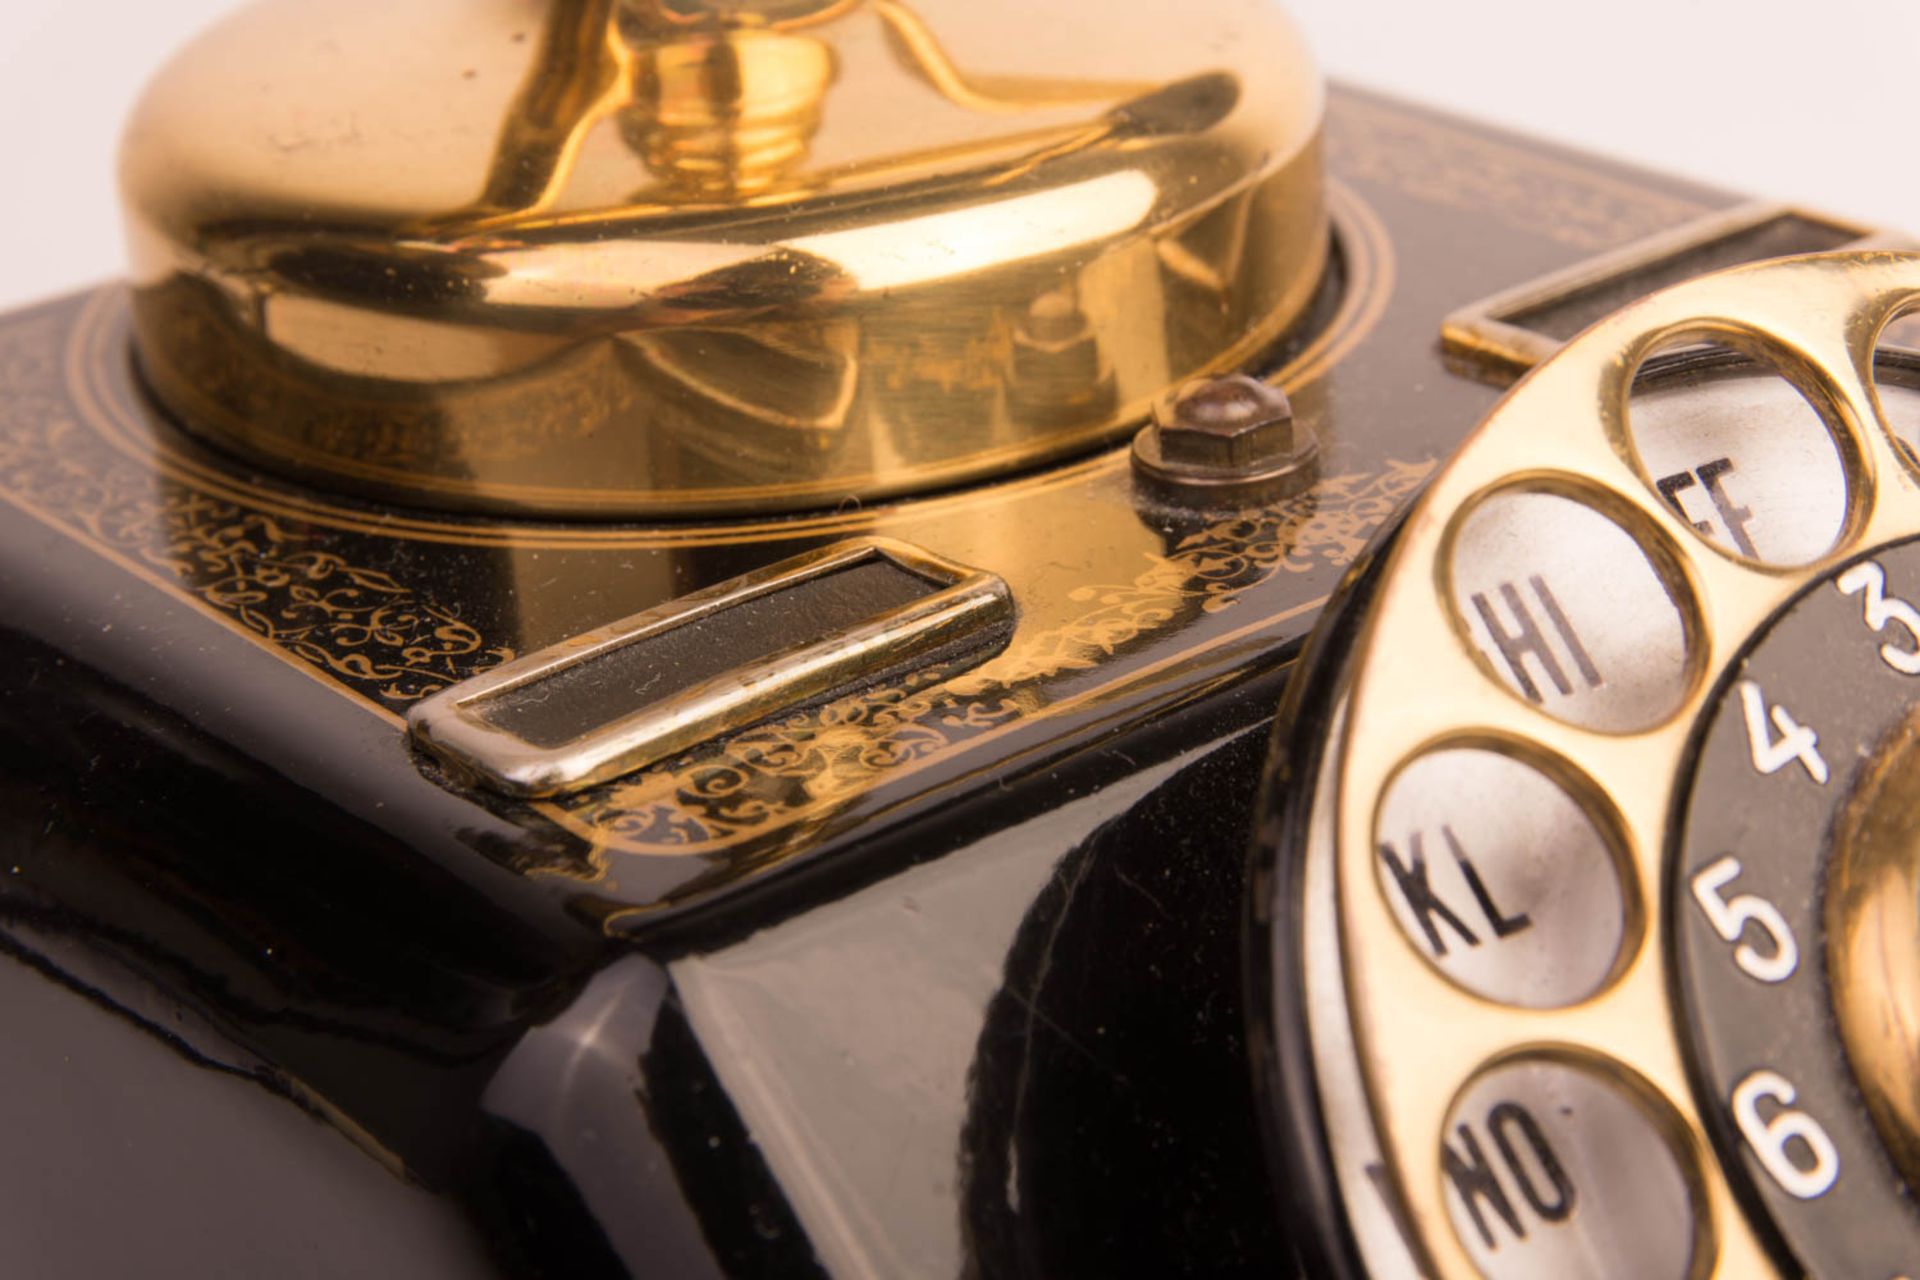 Copenhagen Expoga Wählscheibentelefon in schwarz und gold, 20. Jhd. - Bild 3 aus 8